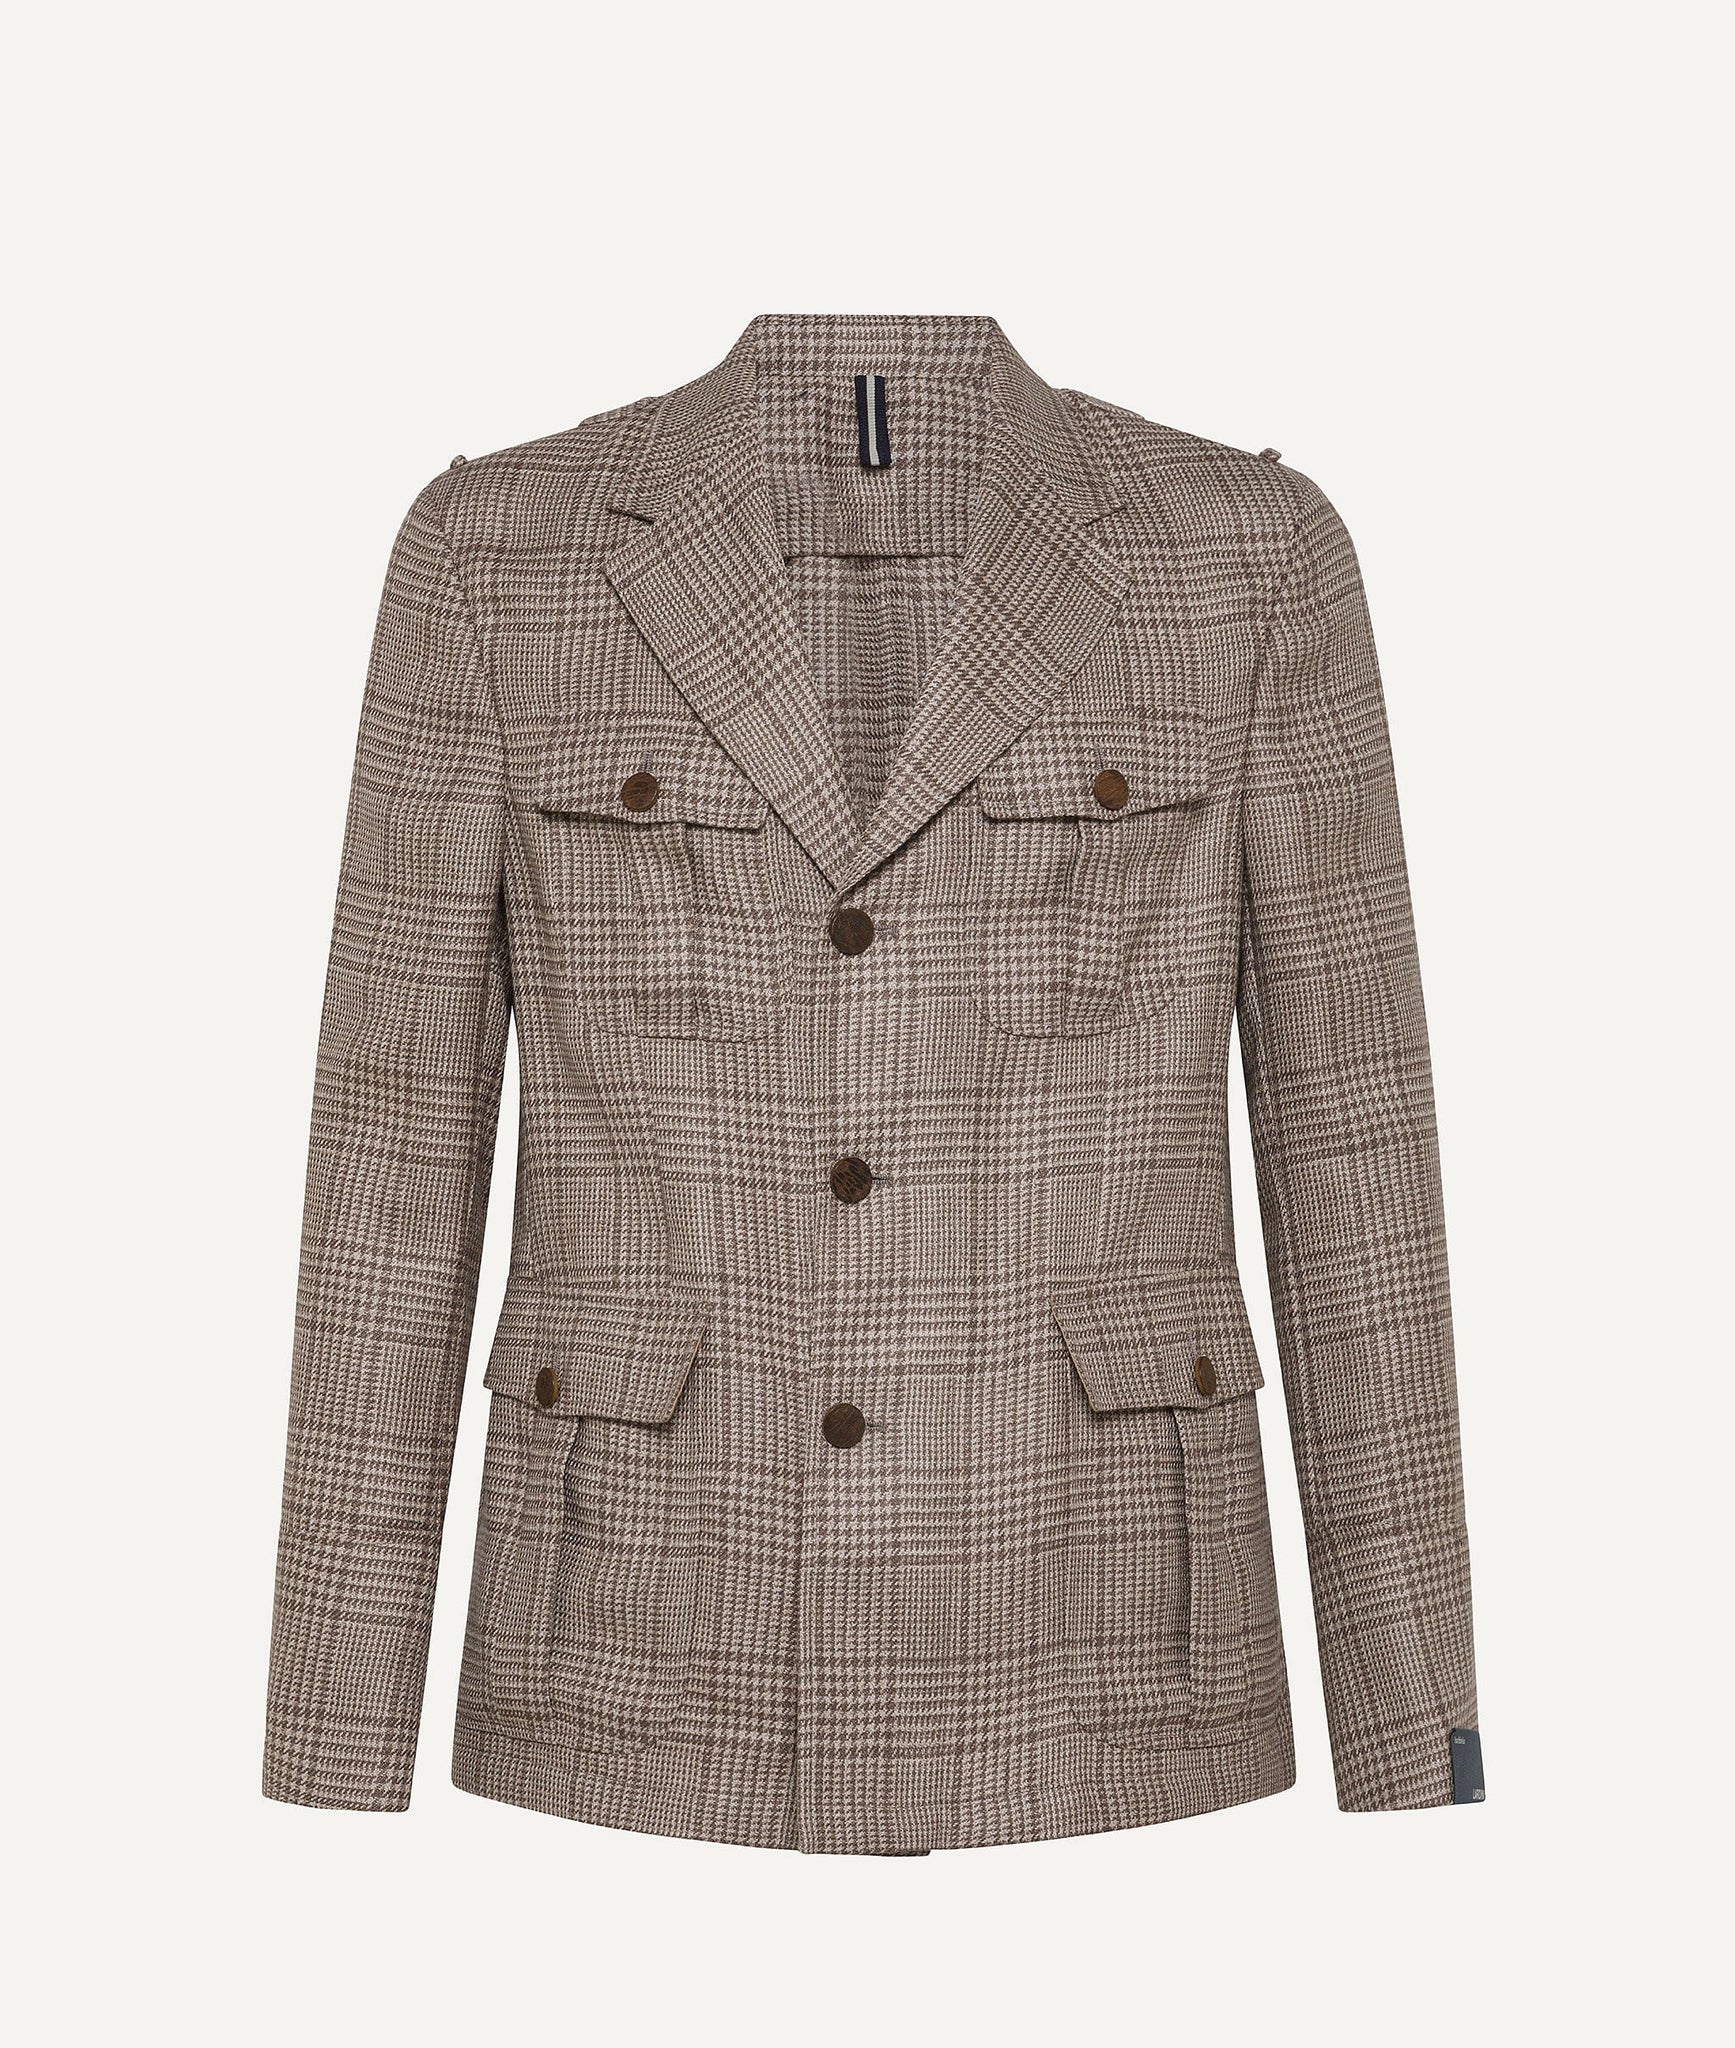 Lardini - Jacket in Wool & Linen